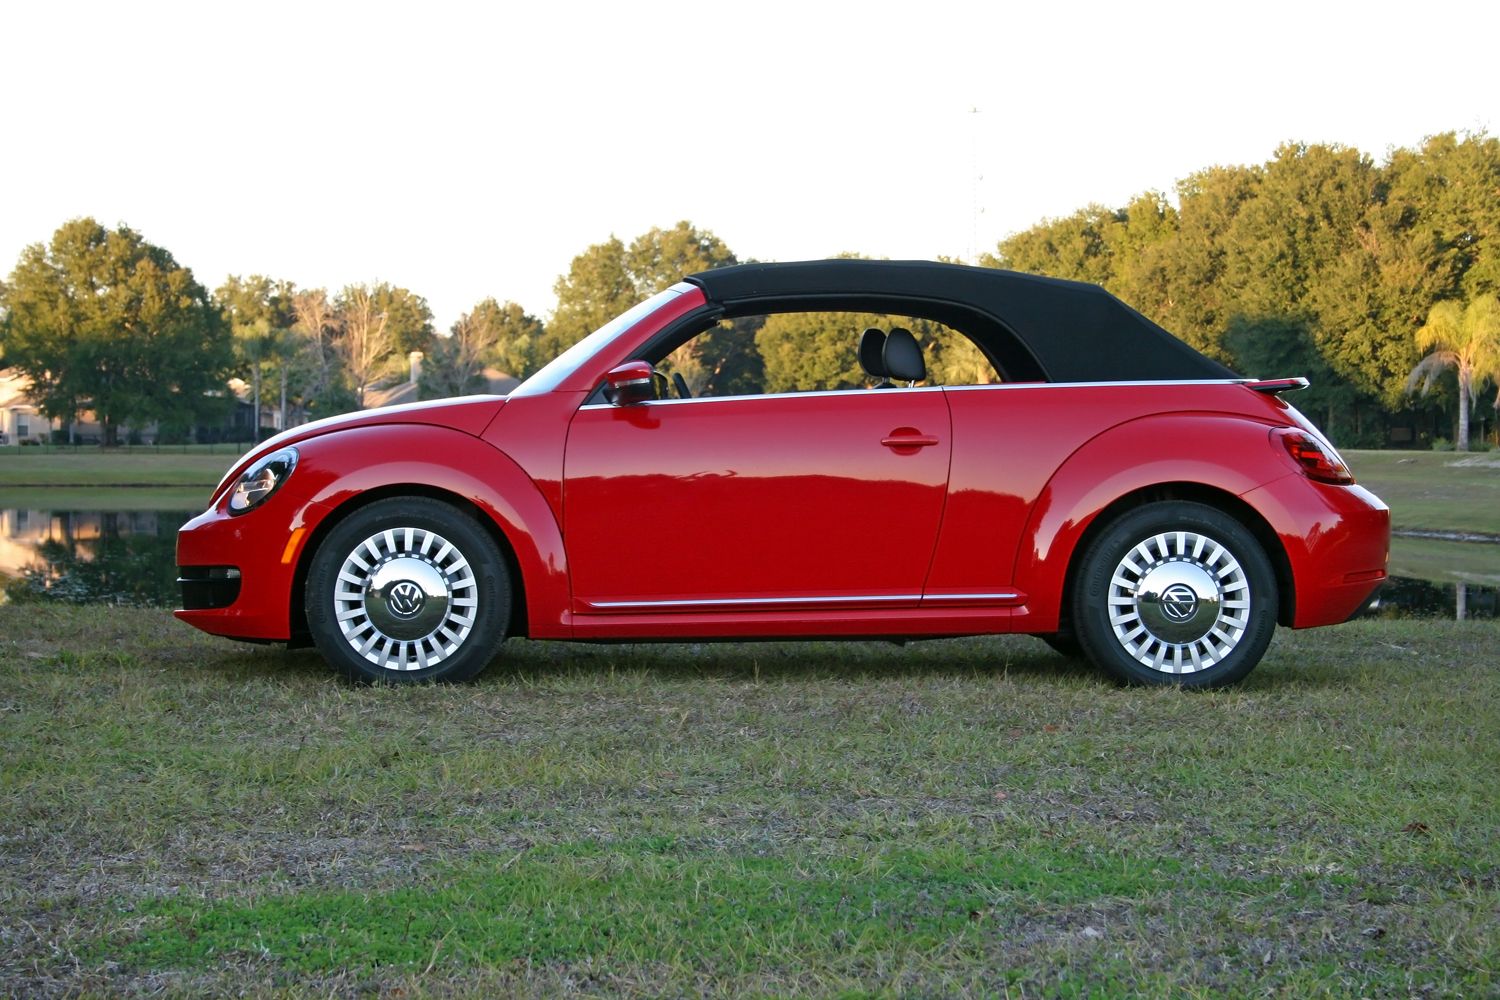 2015 Volkswagen Beetle Convertible 1.8T - Driven